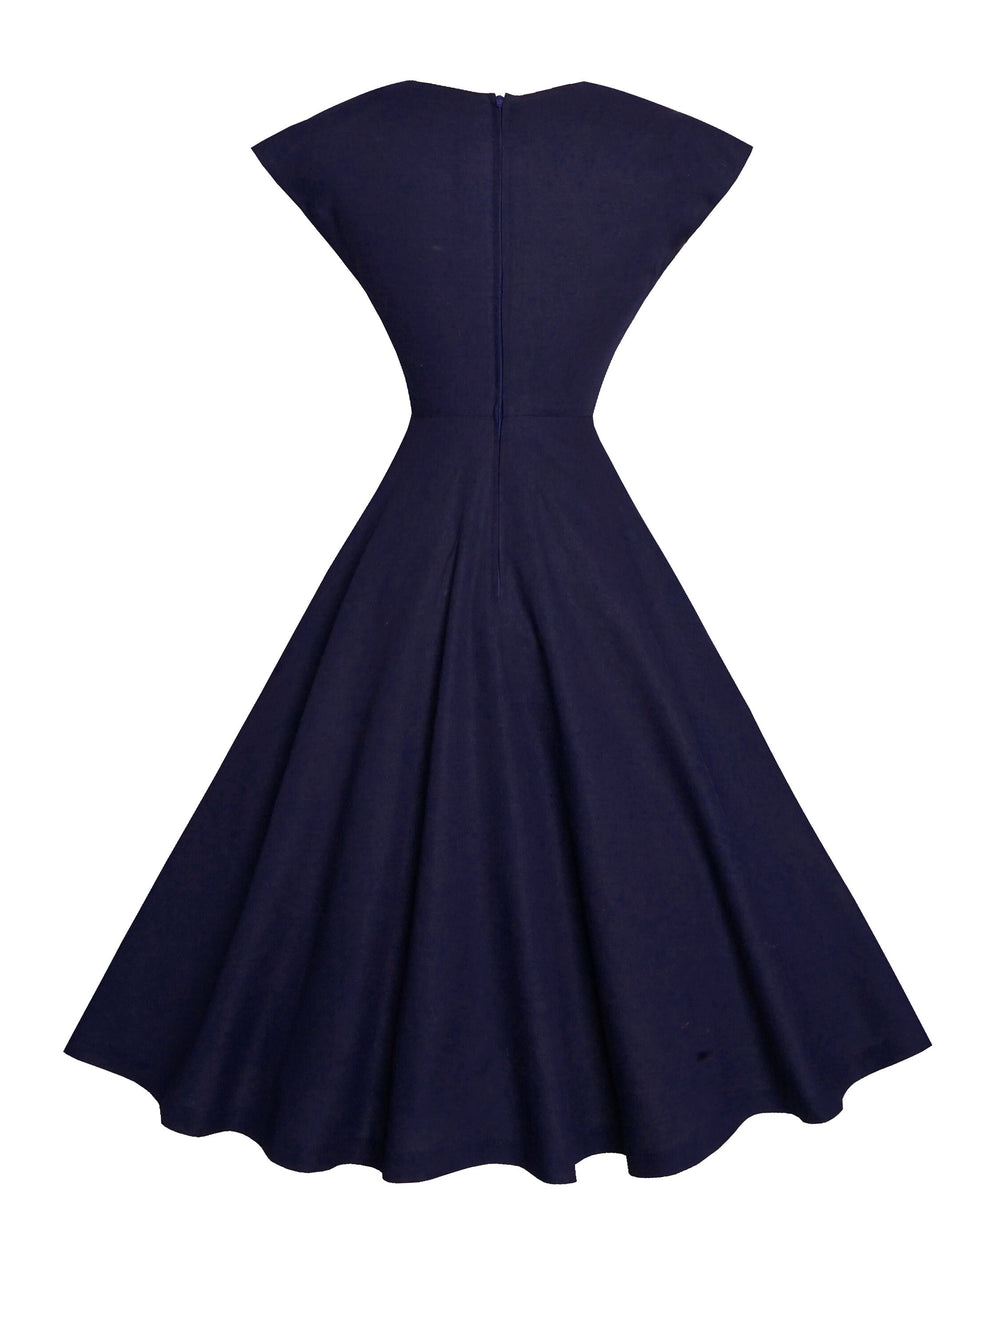 MTO - Kennedy Dress in Indigo Blue Linen